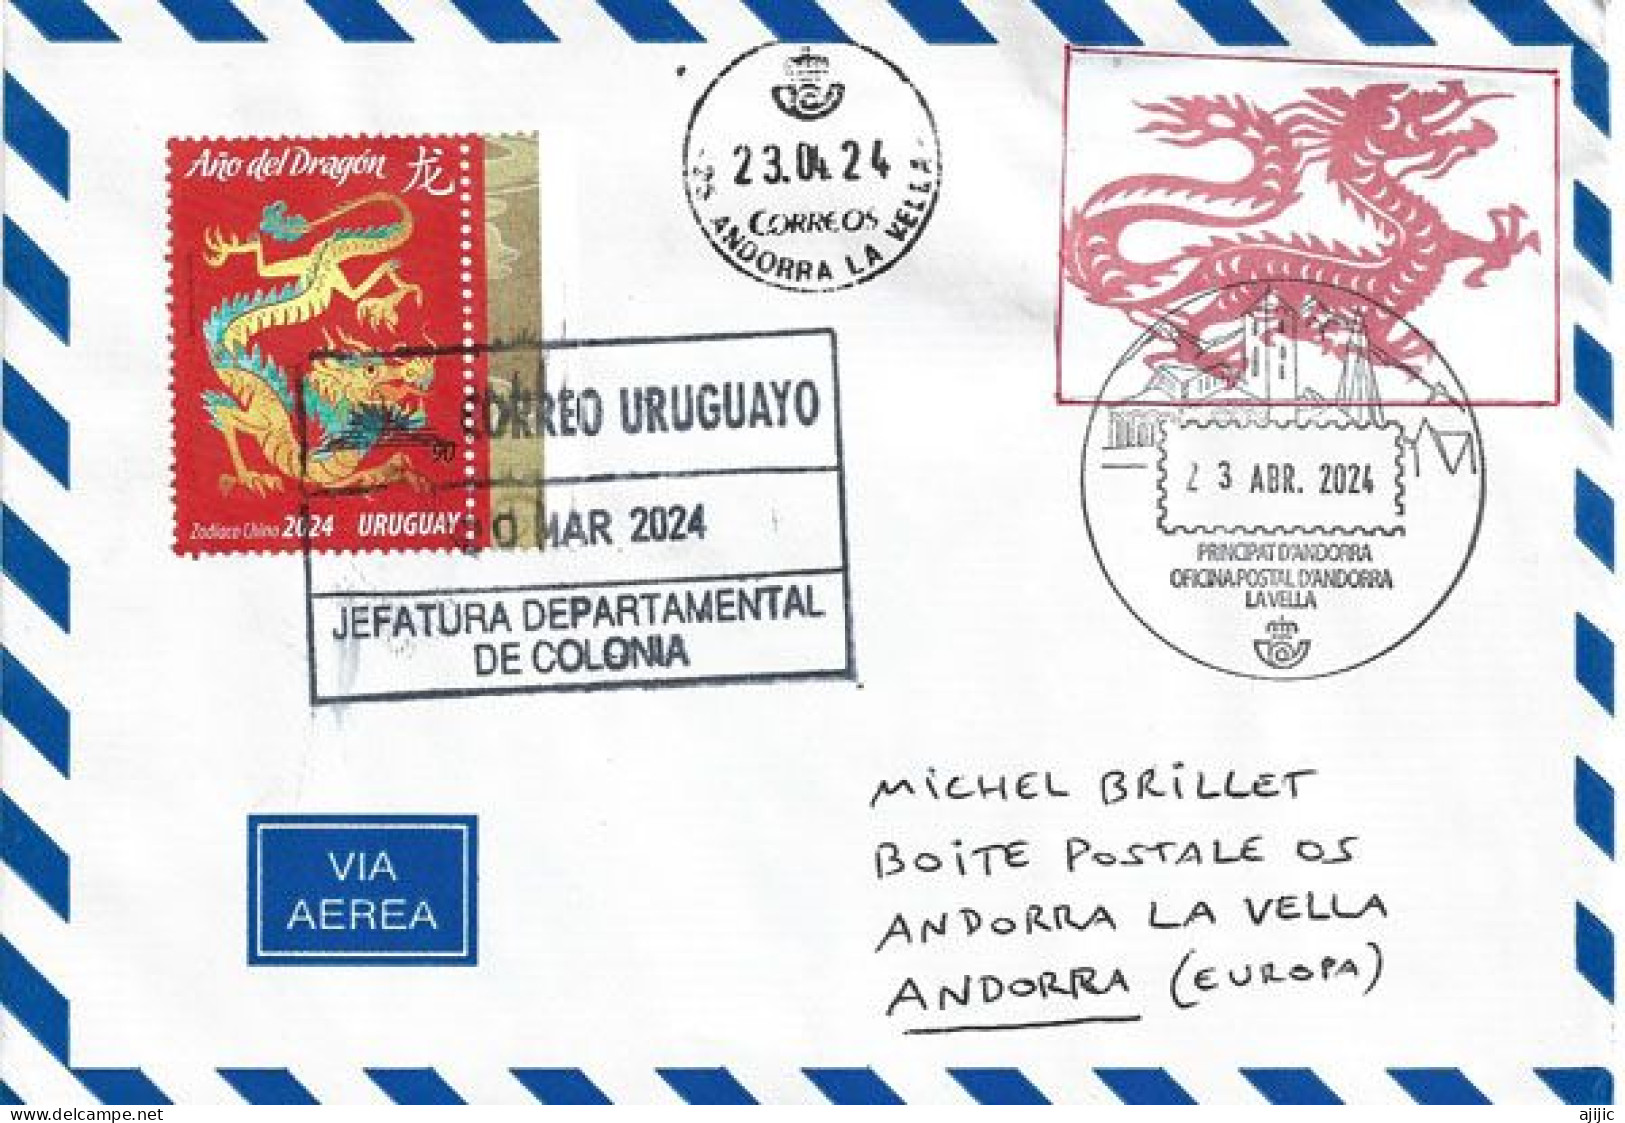 2024.URUGUAY. Année Du Dragon, Belle Lettre De Colonia (Uruguay) à Andorra, Avec Timbres à Date Illustré Andorra - Nouvel An Chinois